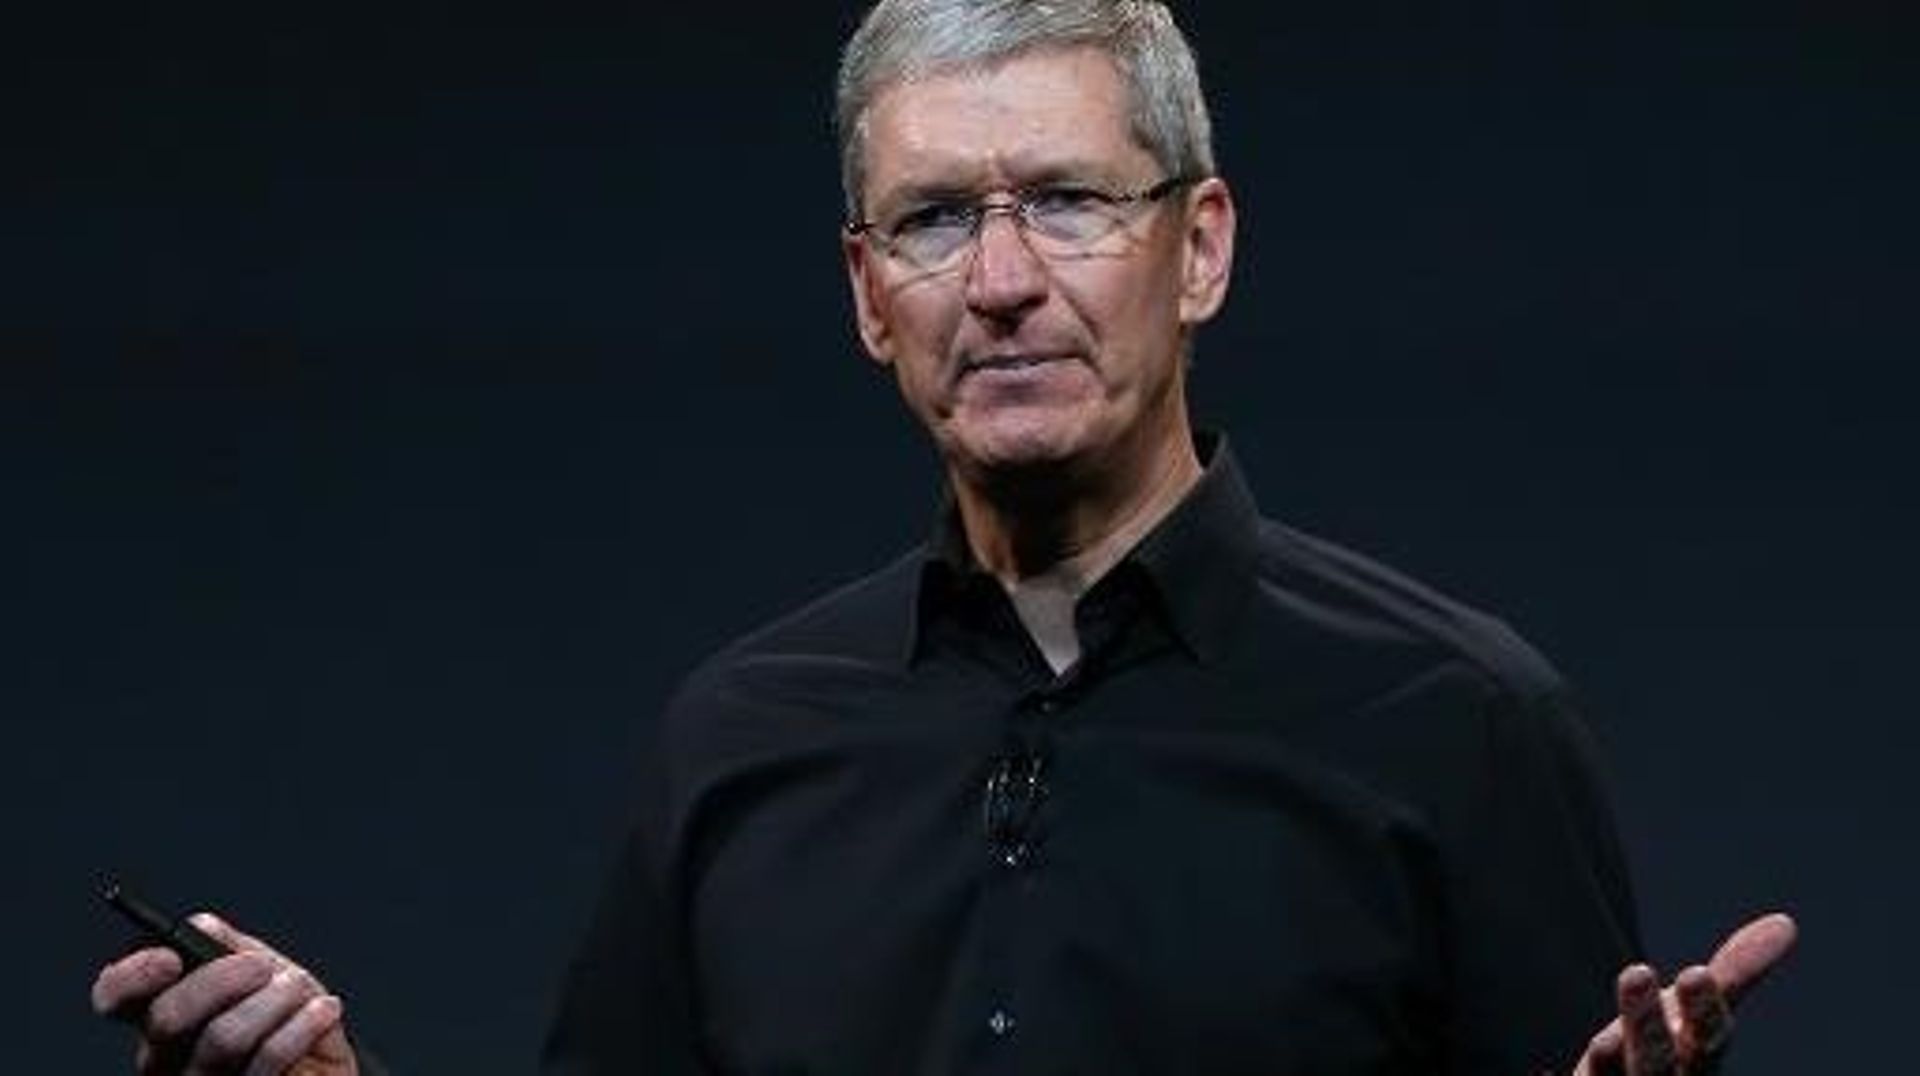 Le directeur général d'Apple, Tim Cook, le 22 octobre 2013 à San Francisco 